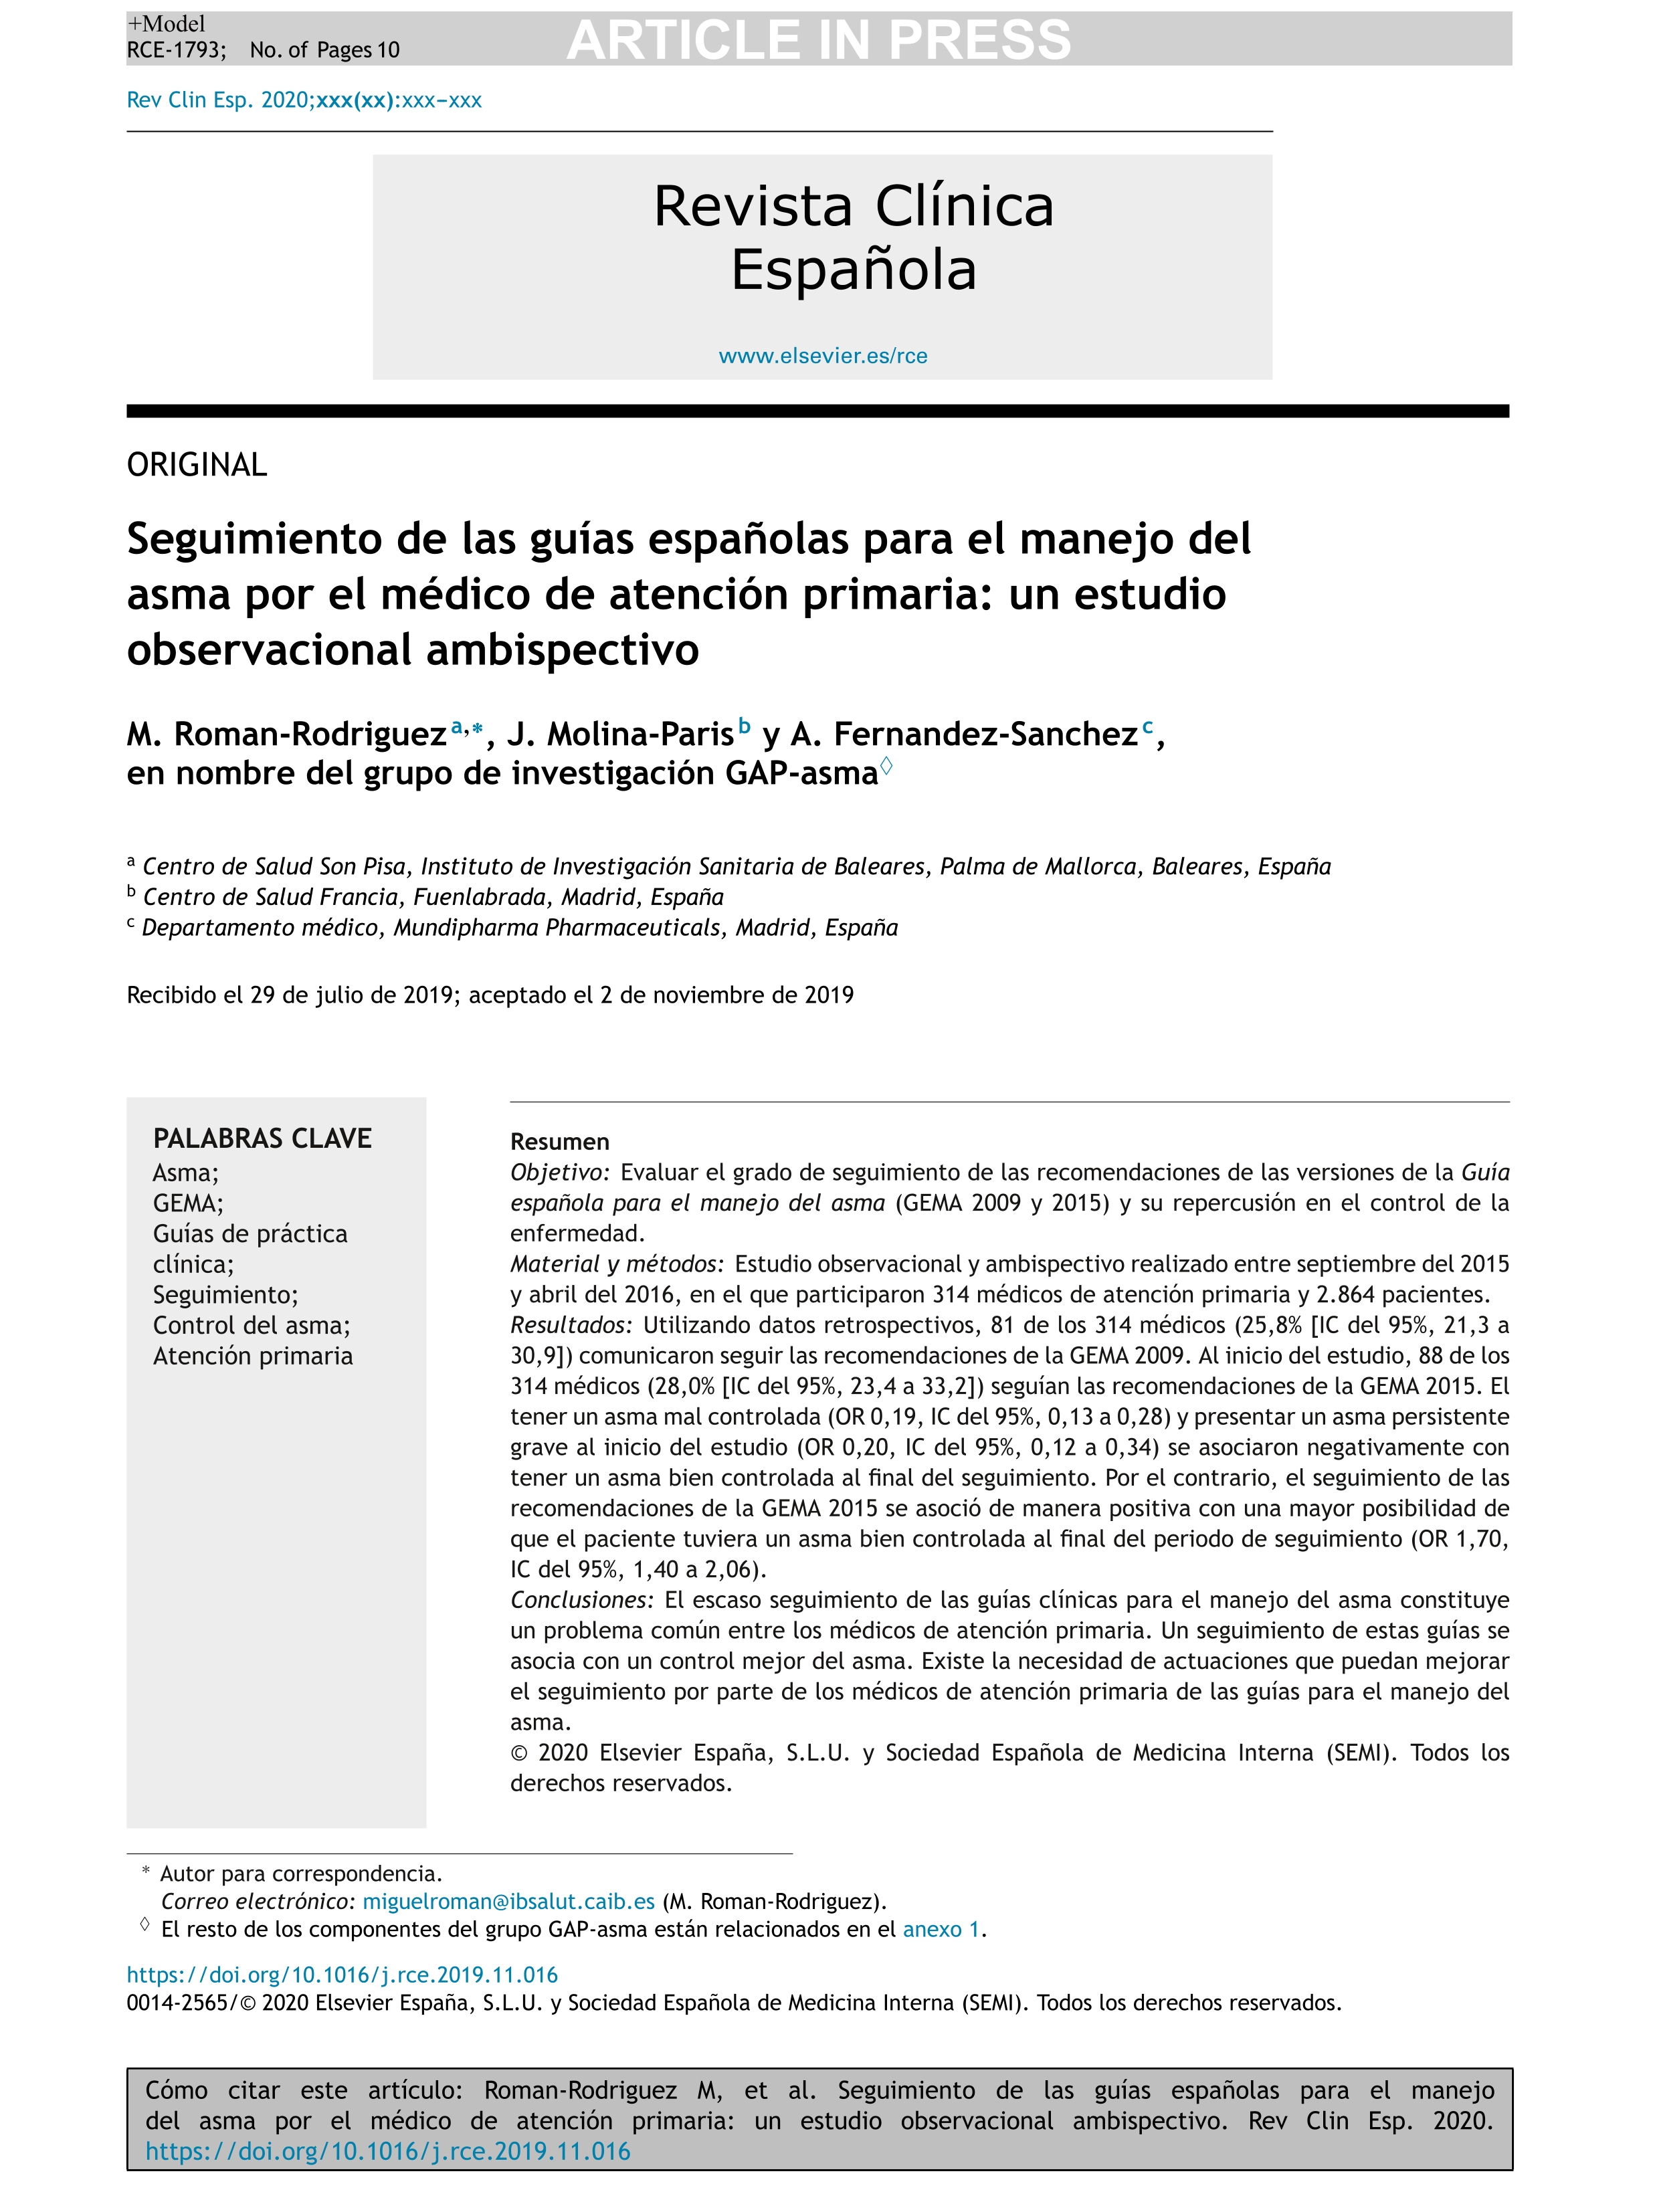 Seguimiento de las guías españolas para el manejo del asma por el médico de atención primaria: un estudio observacional ambispectivo